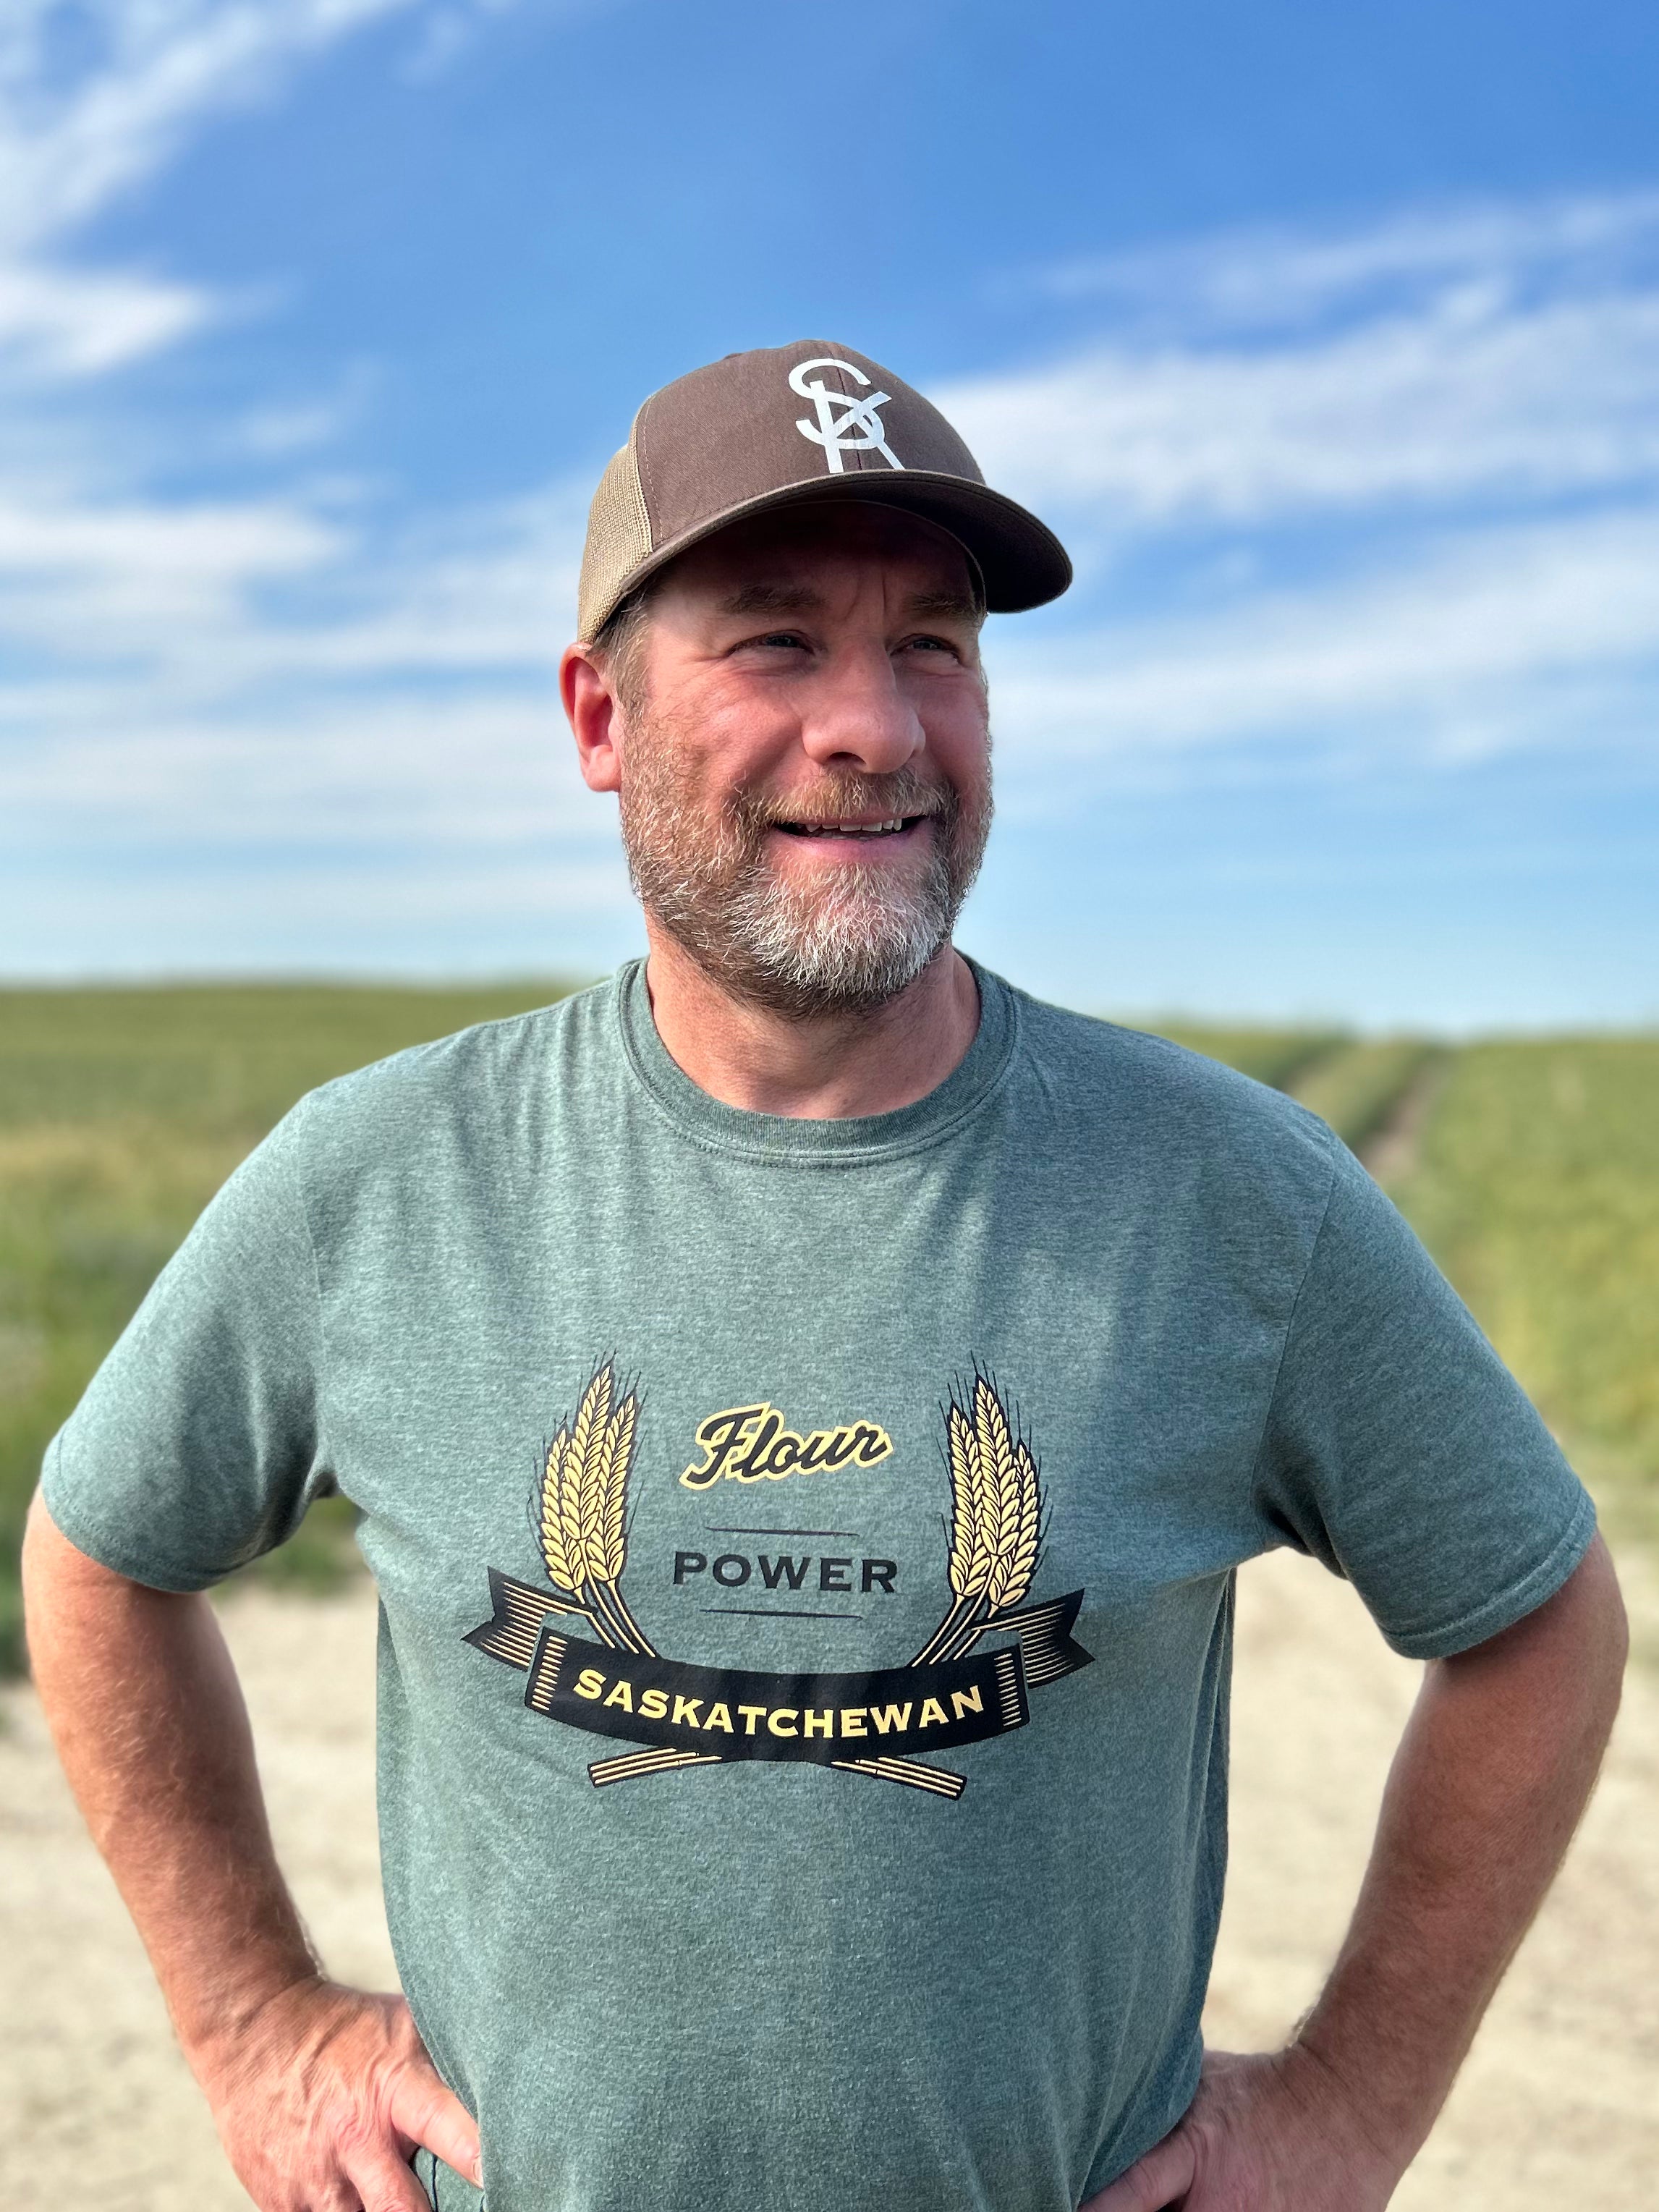 Flour Power Saskatchewan T-shirt